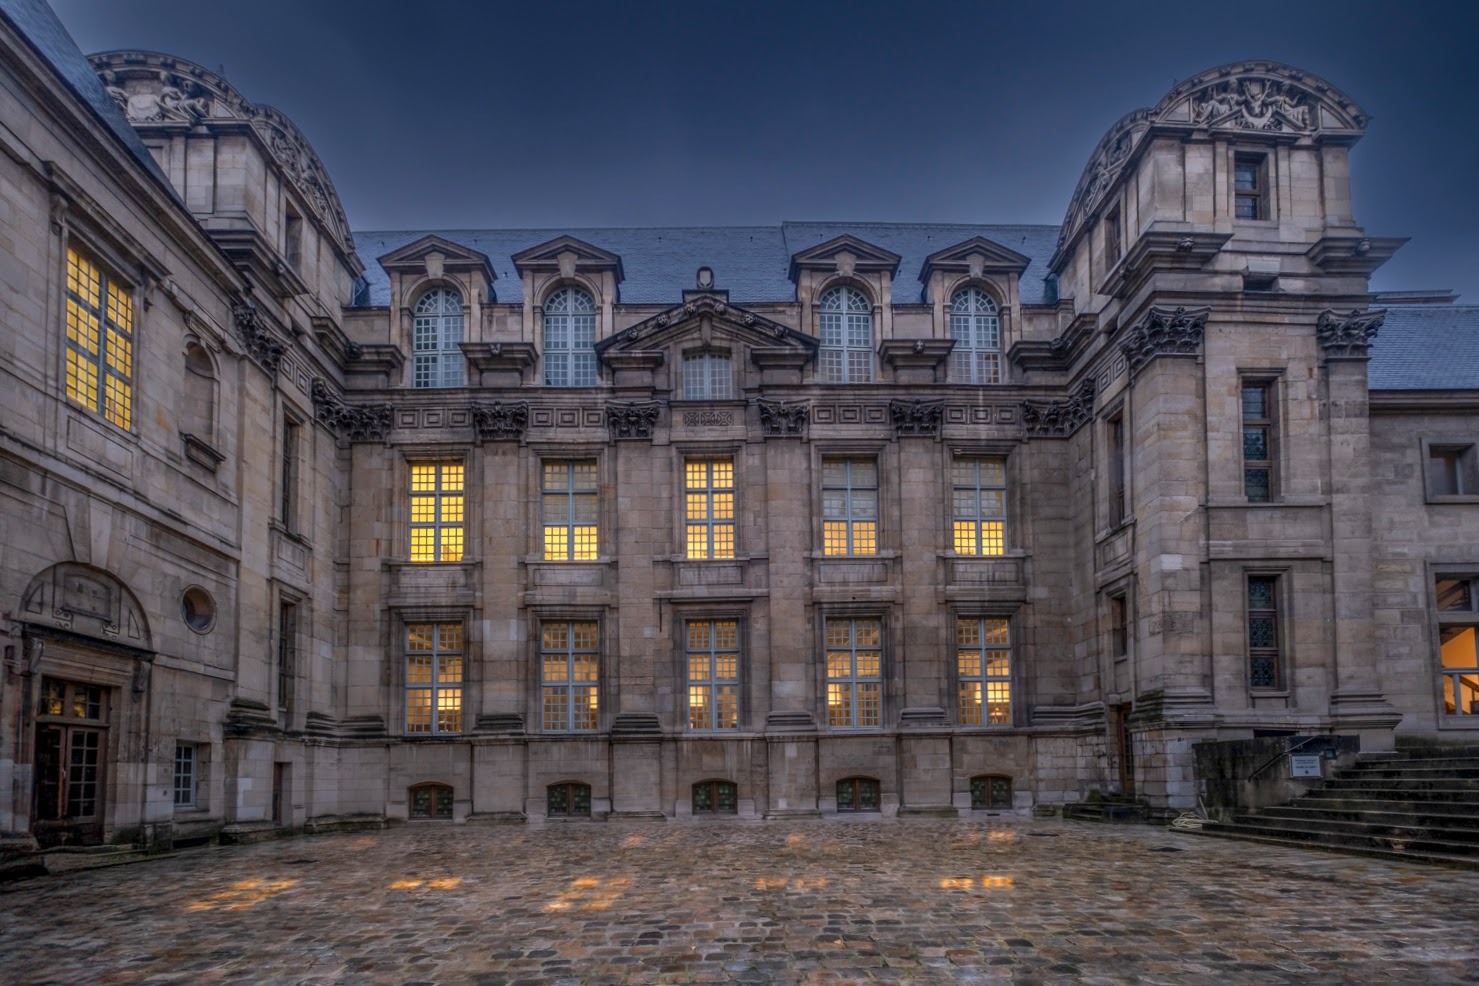 Ouverte en 1763, la bibliothèque historique
de la Ville de Paris (hôtel de Lamoignon, Paris Centre) est la première
bibliothèque publique de Paris.